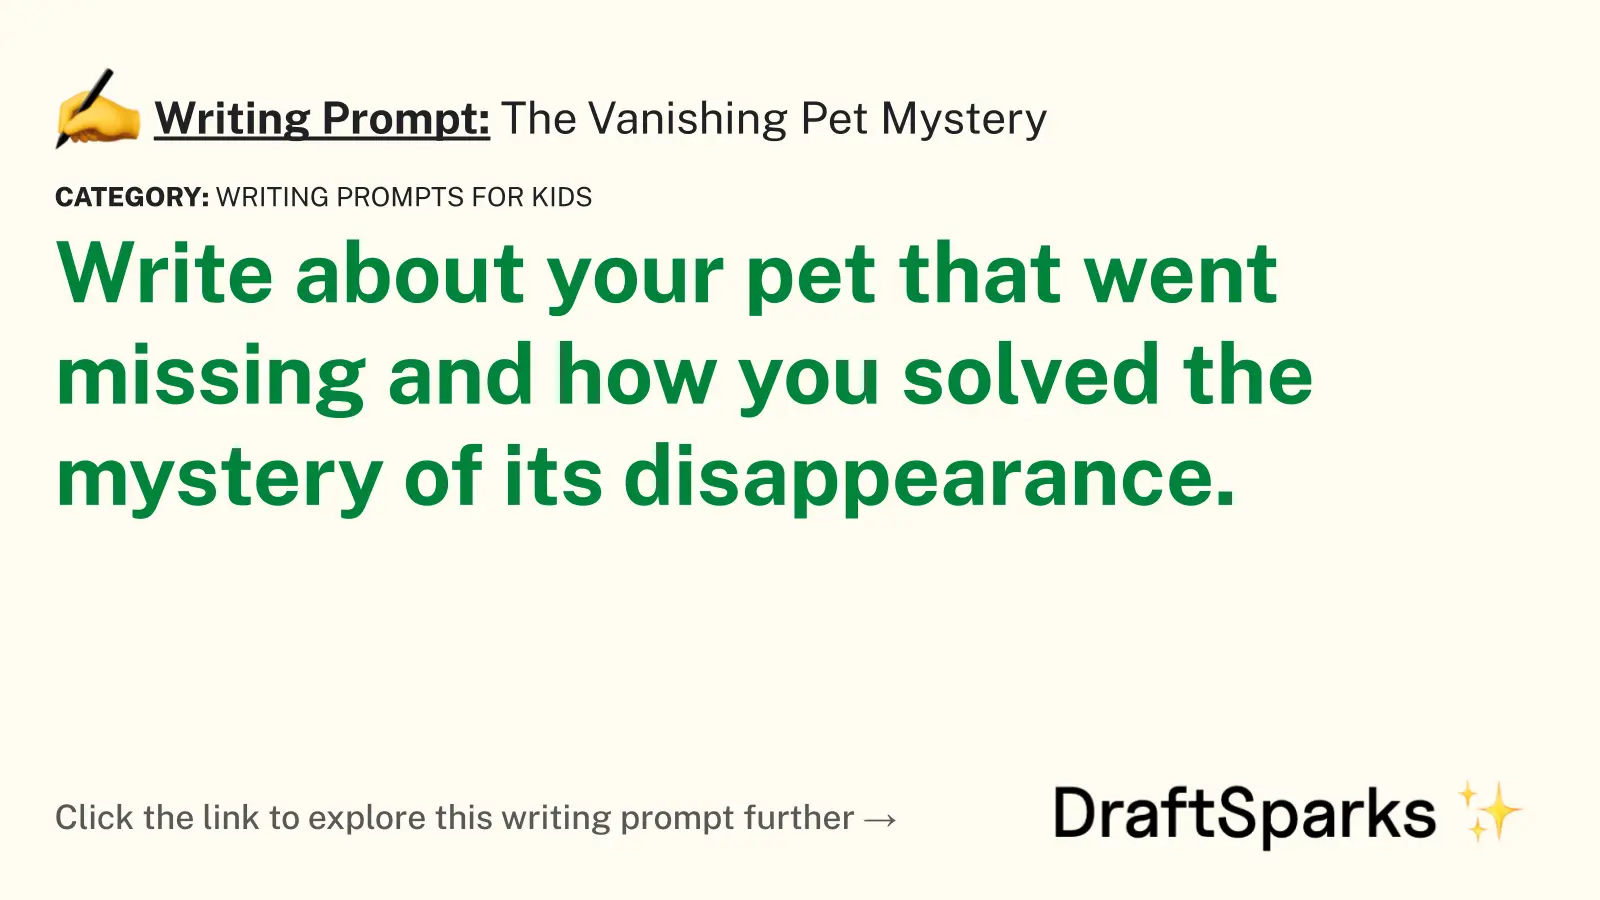 The Vanishing Pet Mystery